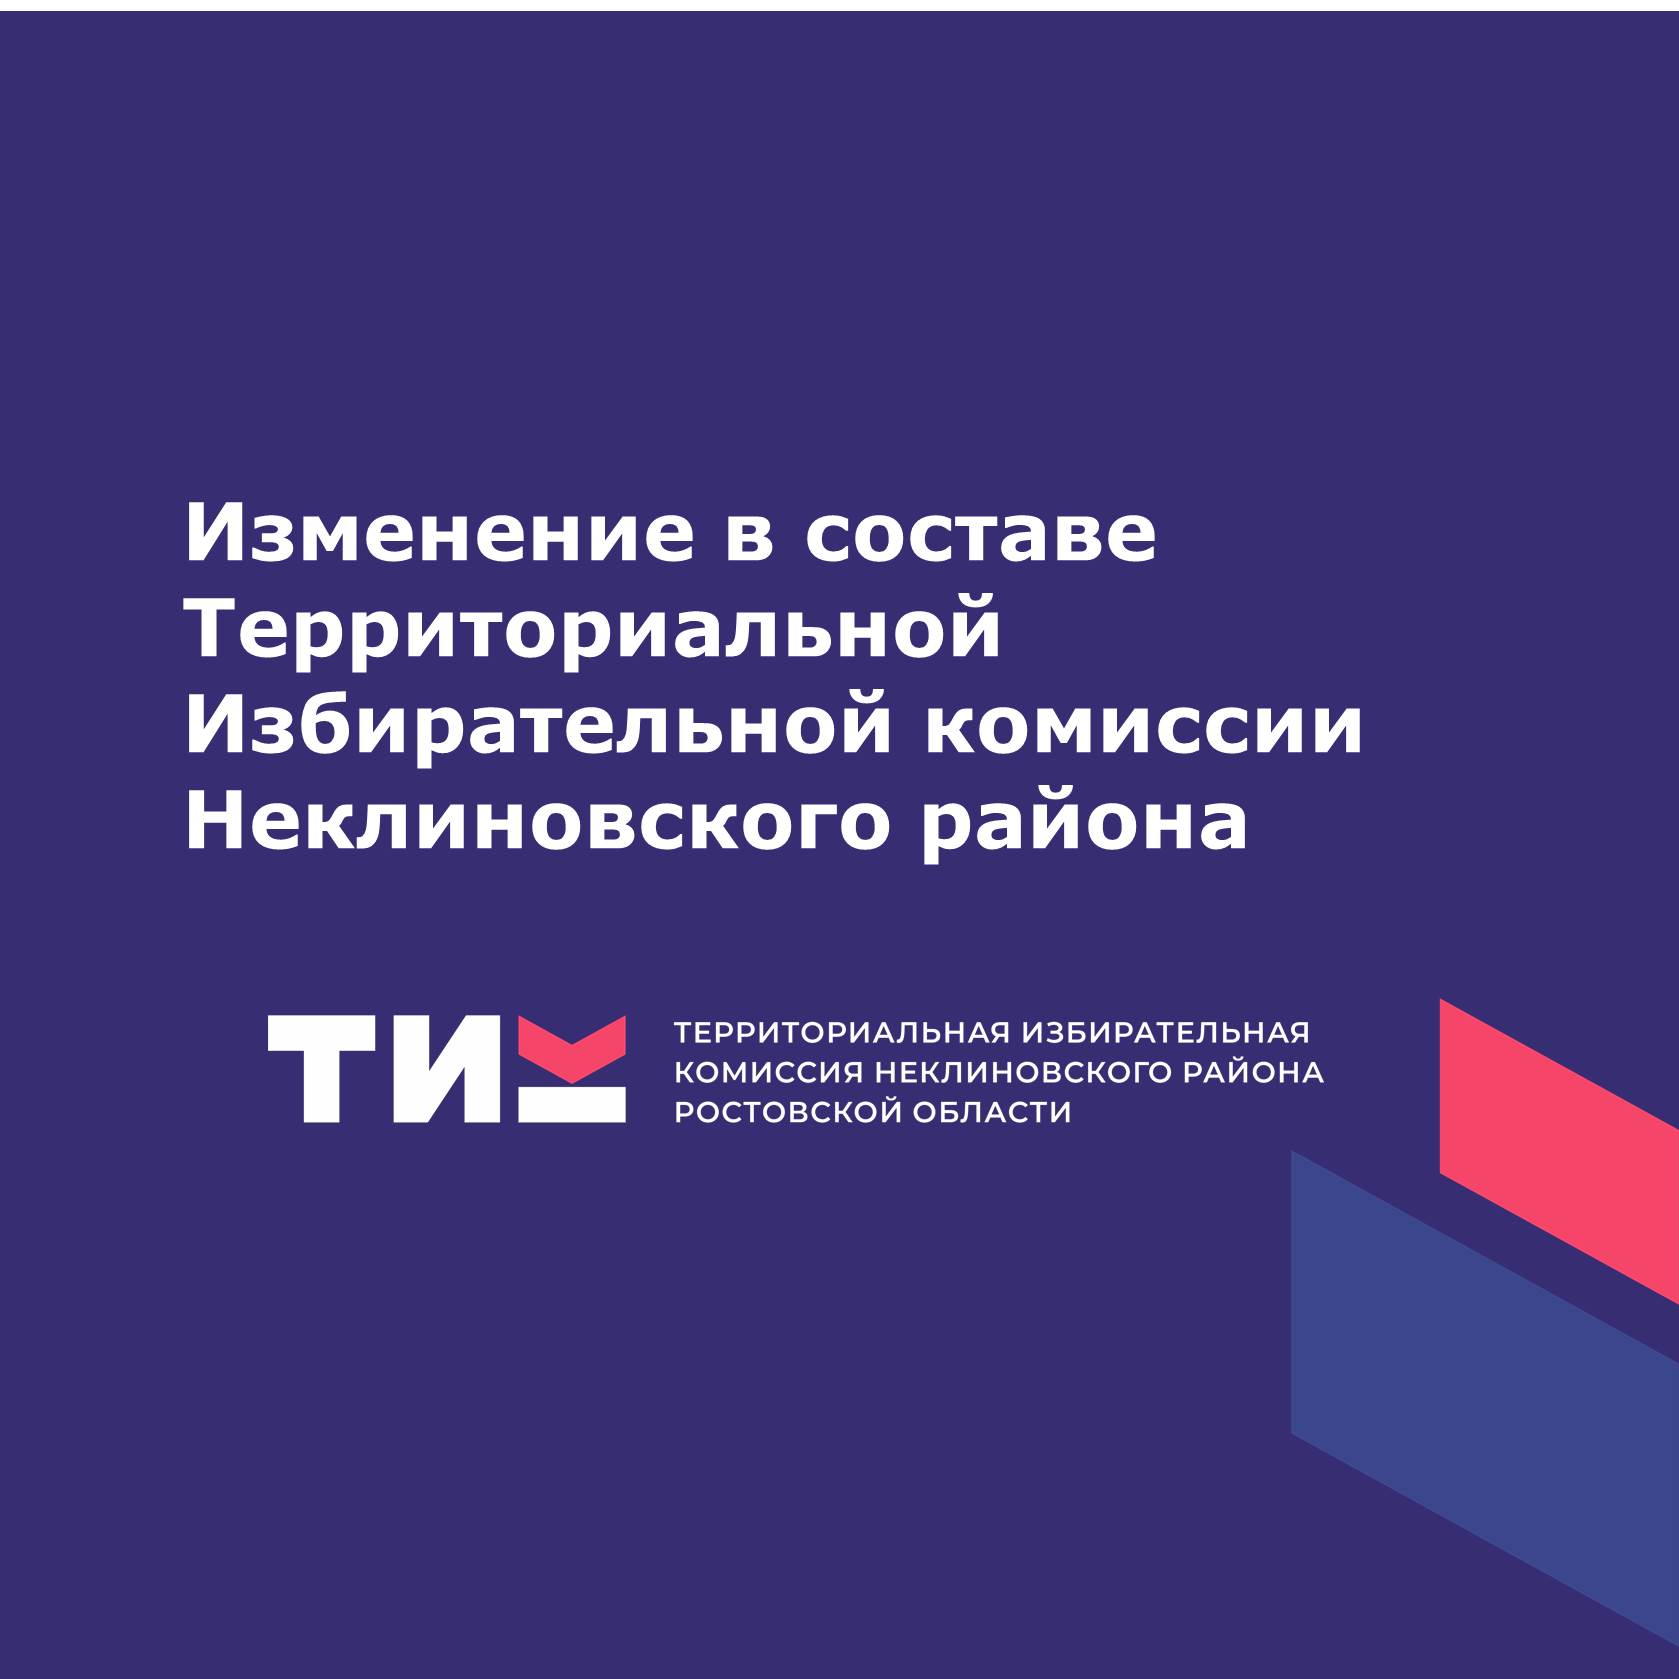 Изменение в составе Территориальной Избирательной комиссии Неклиновского района